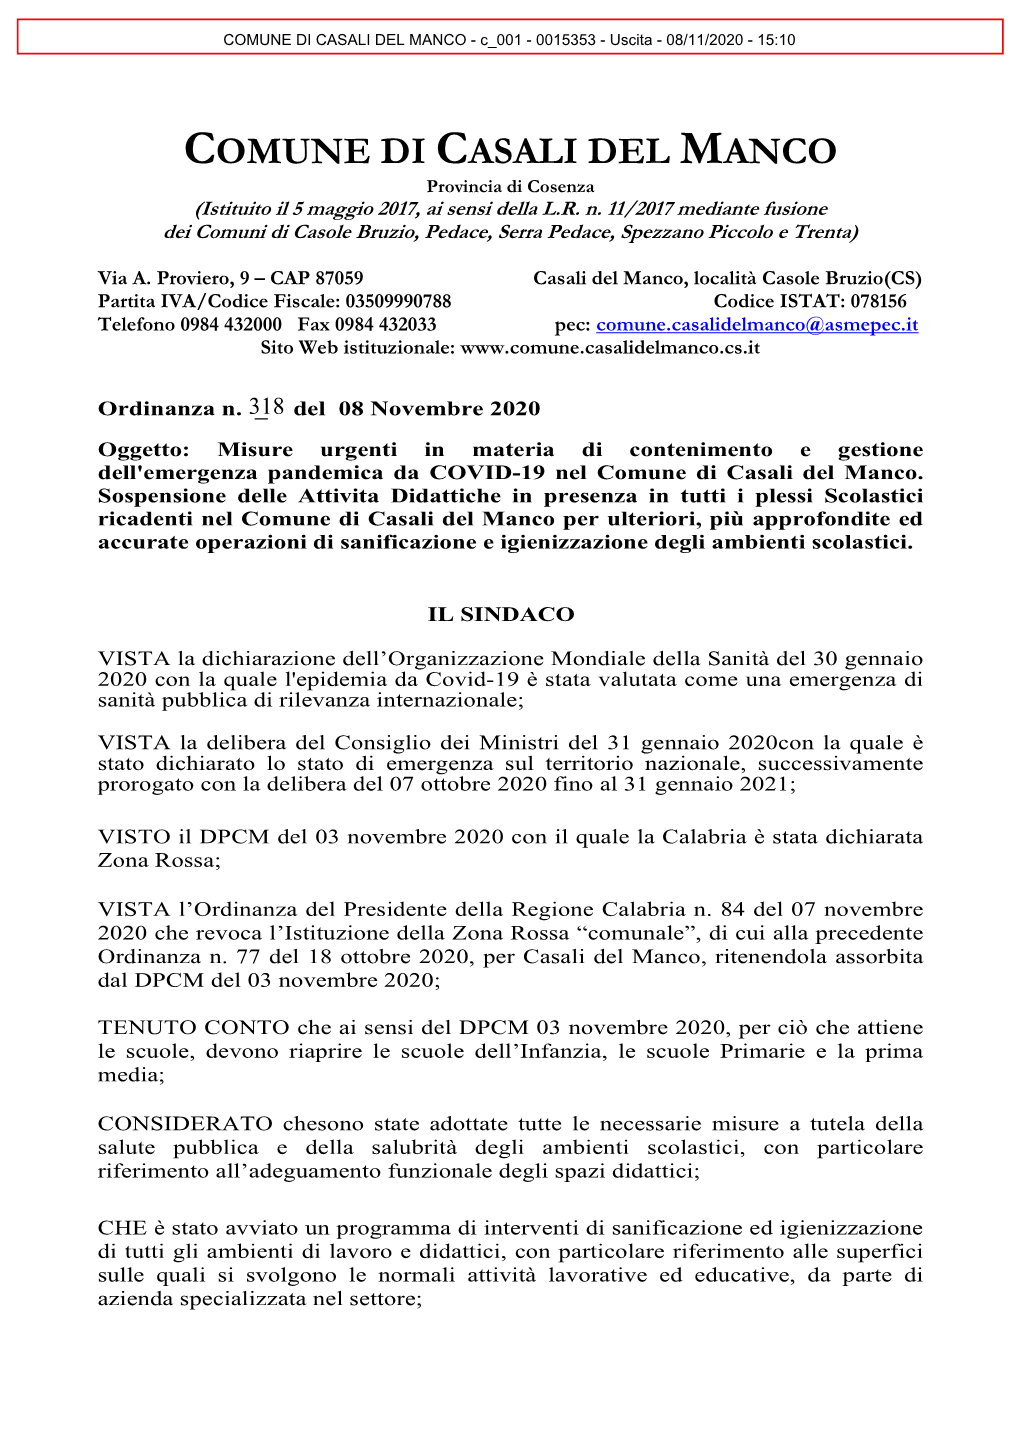 COMUNE DI CASALI DEL MANCO - C 001 - 0015353 - Uscita - 08/11/2020 - 15:10